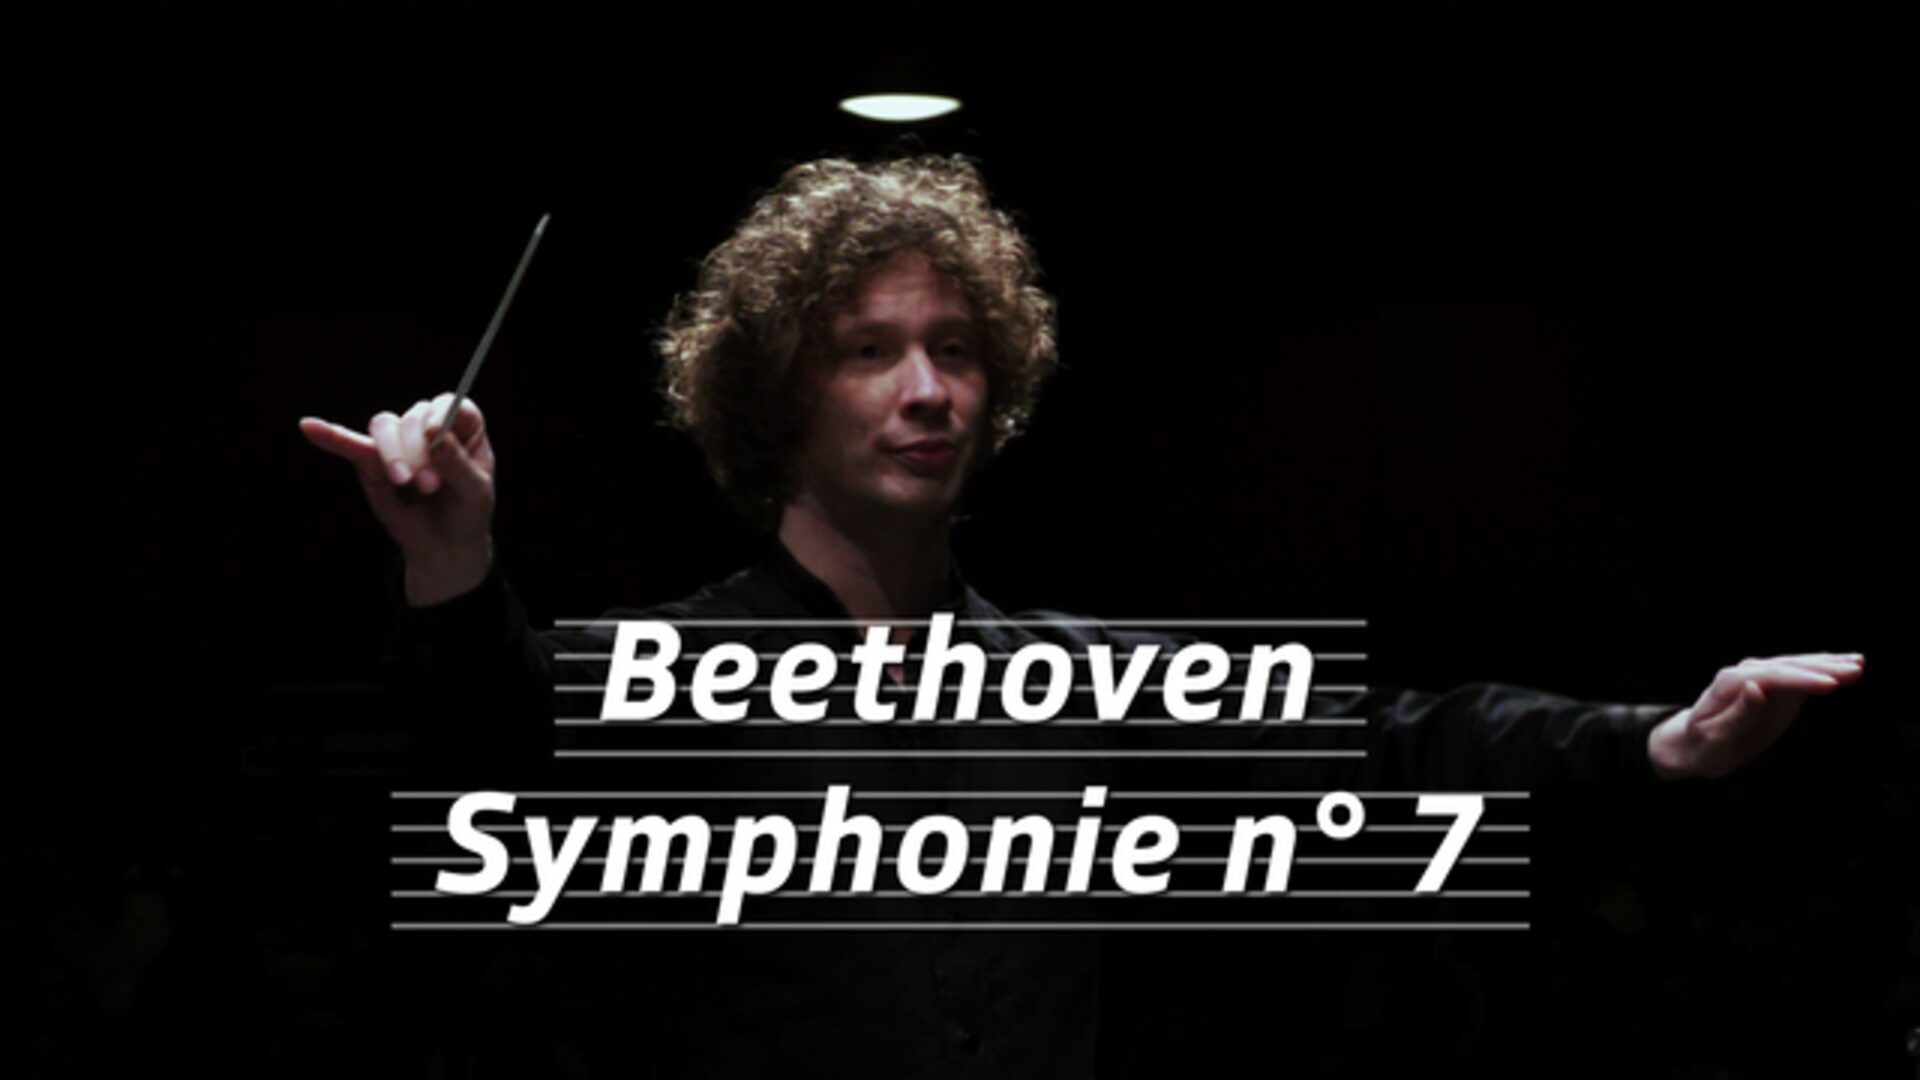 Beethoven - Symphonie n° 7